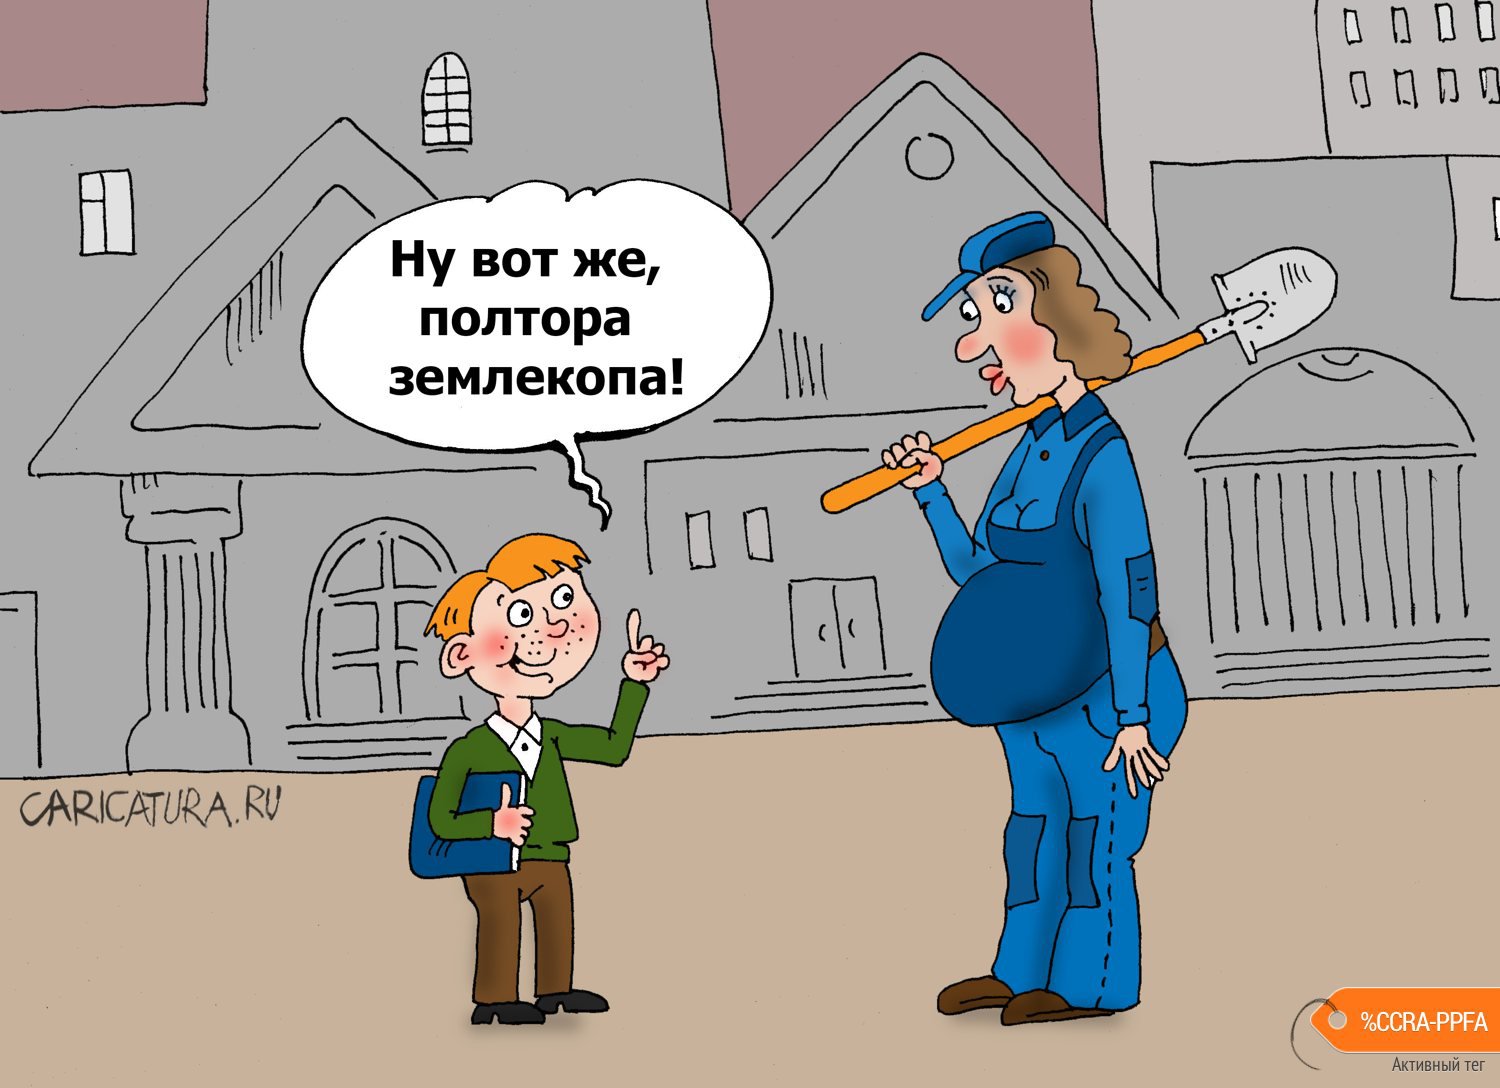 Карикатура "Перестукин", Валерий Тарасенко